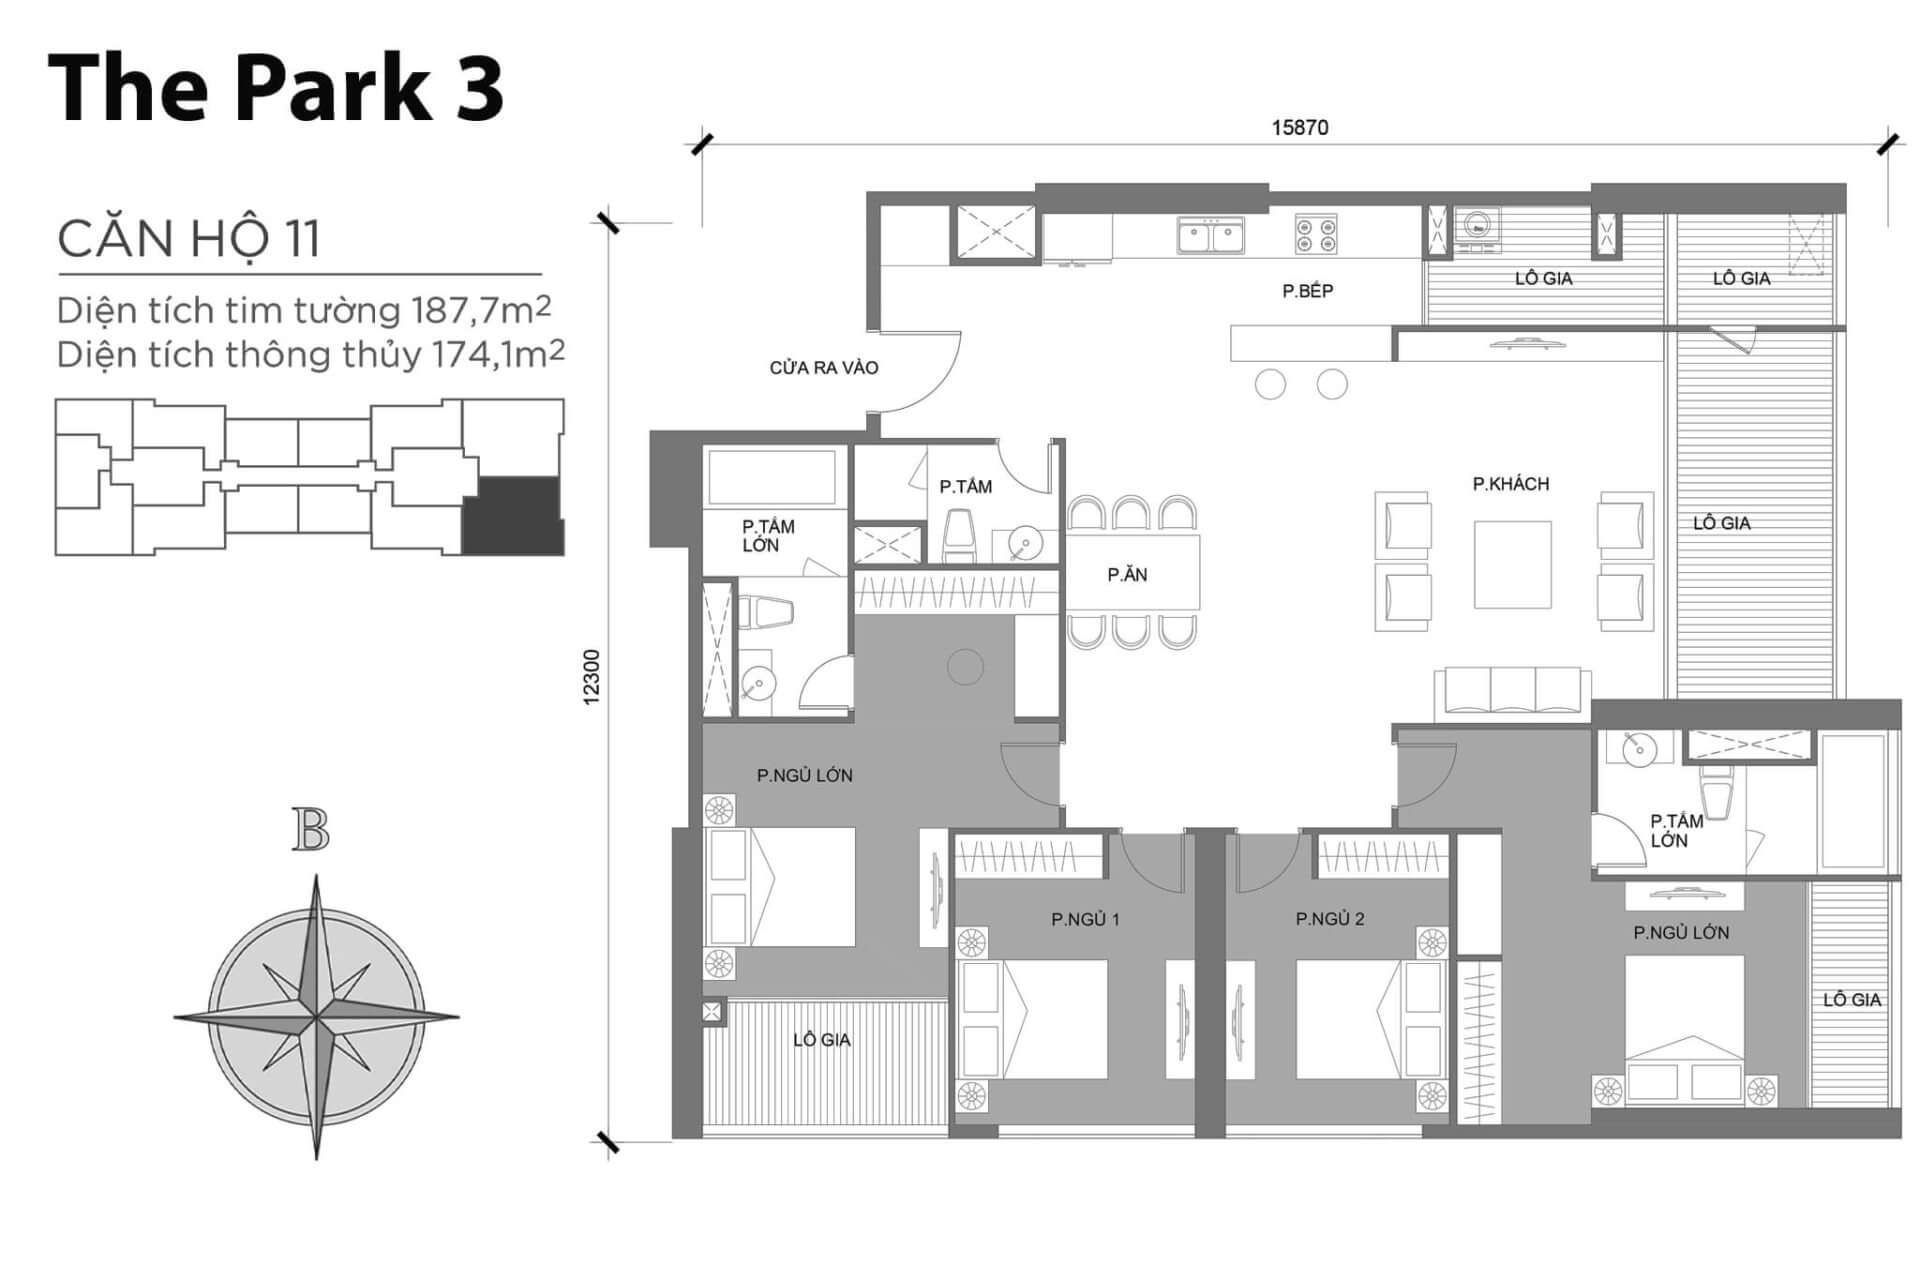 mặt bằng layout căn hộ số 11 Park 3 Vinhomes Central Park